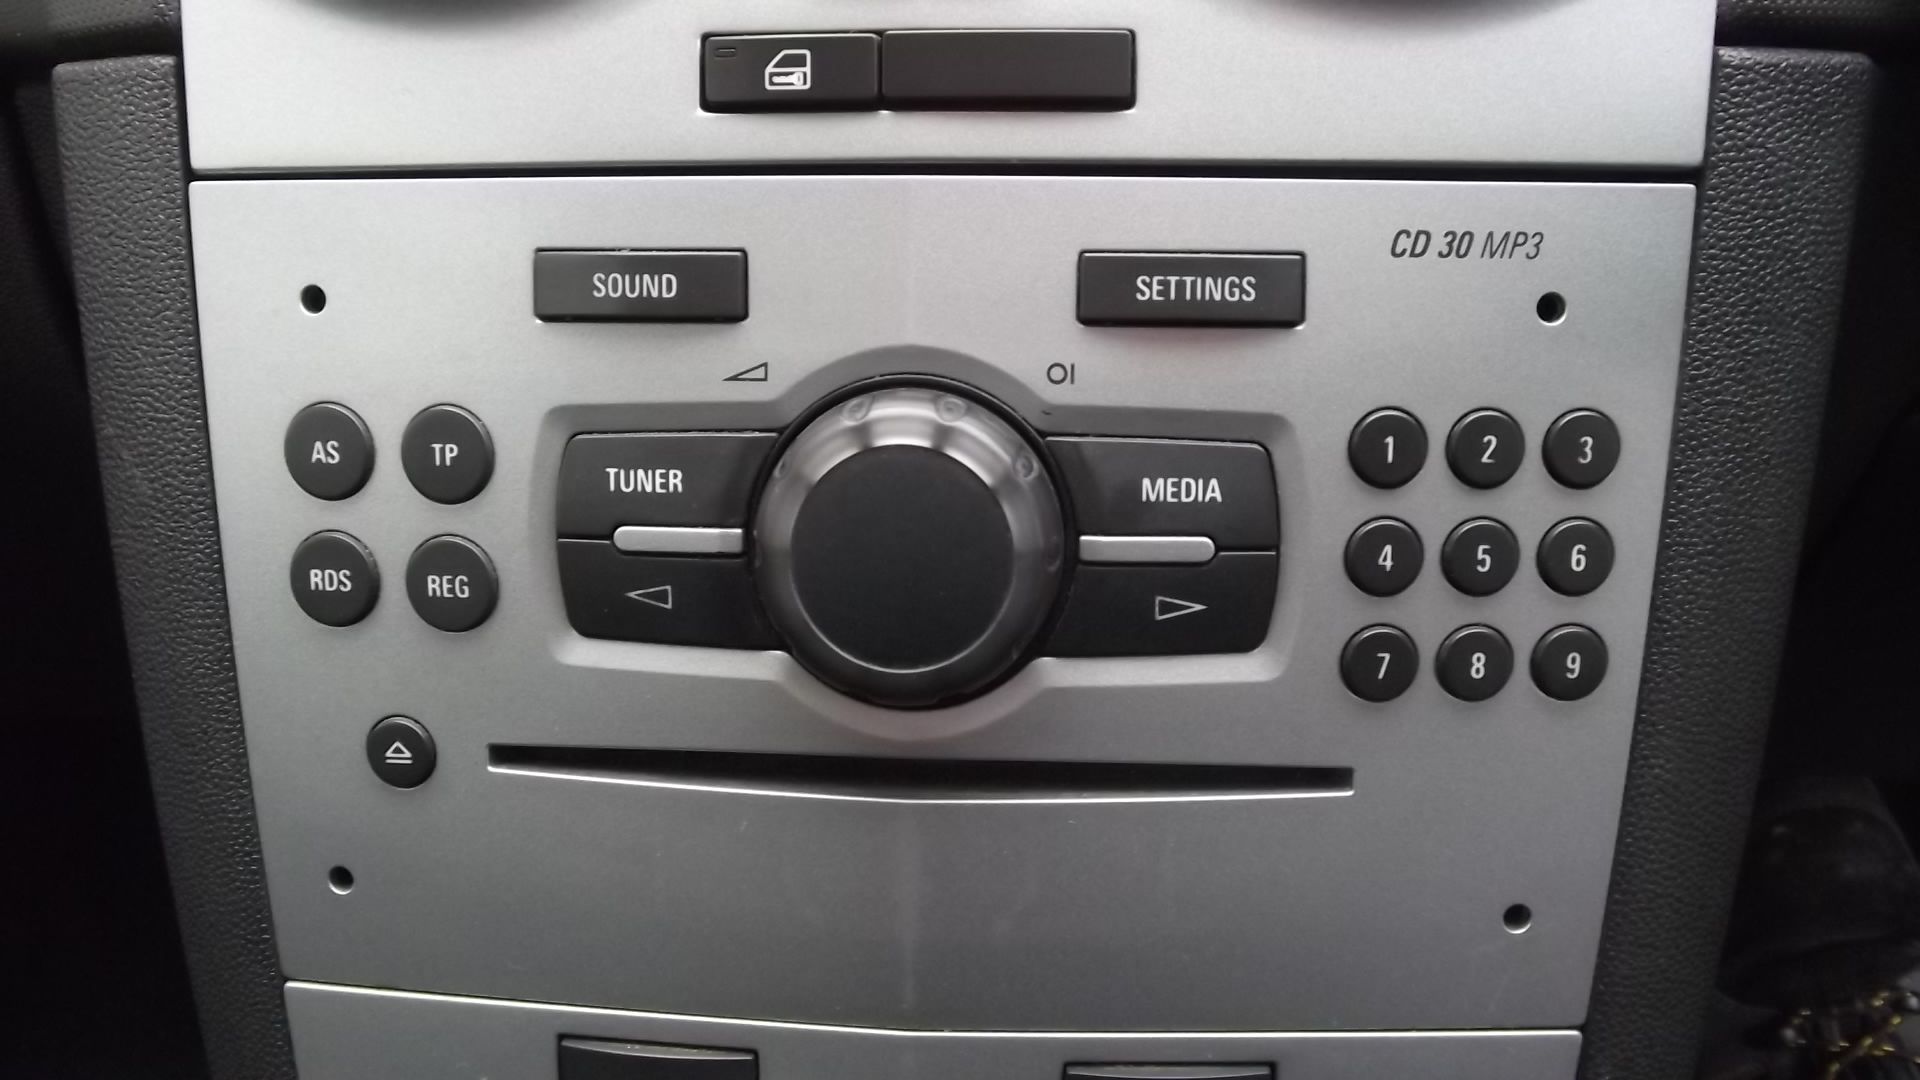 2013 Vauxhall Corsa Van 1.3 Cdti 3 Door Van - Image 6 of 16